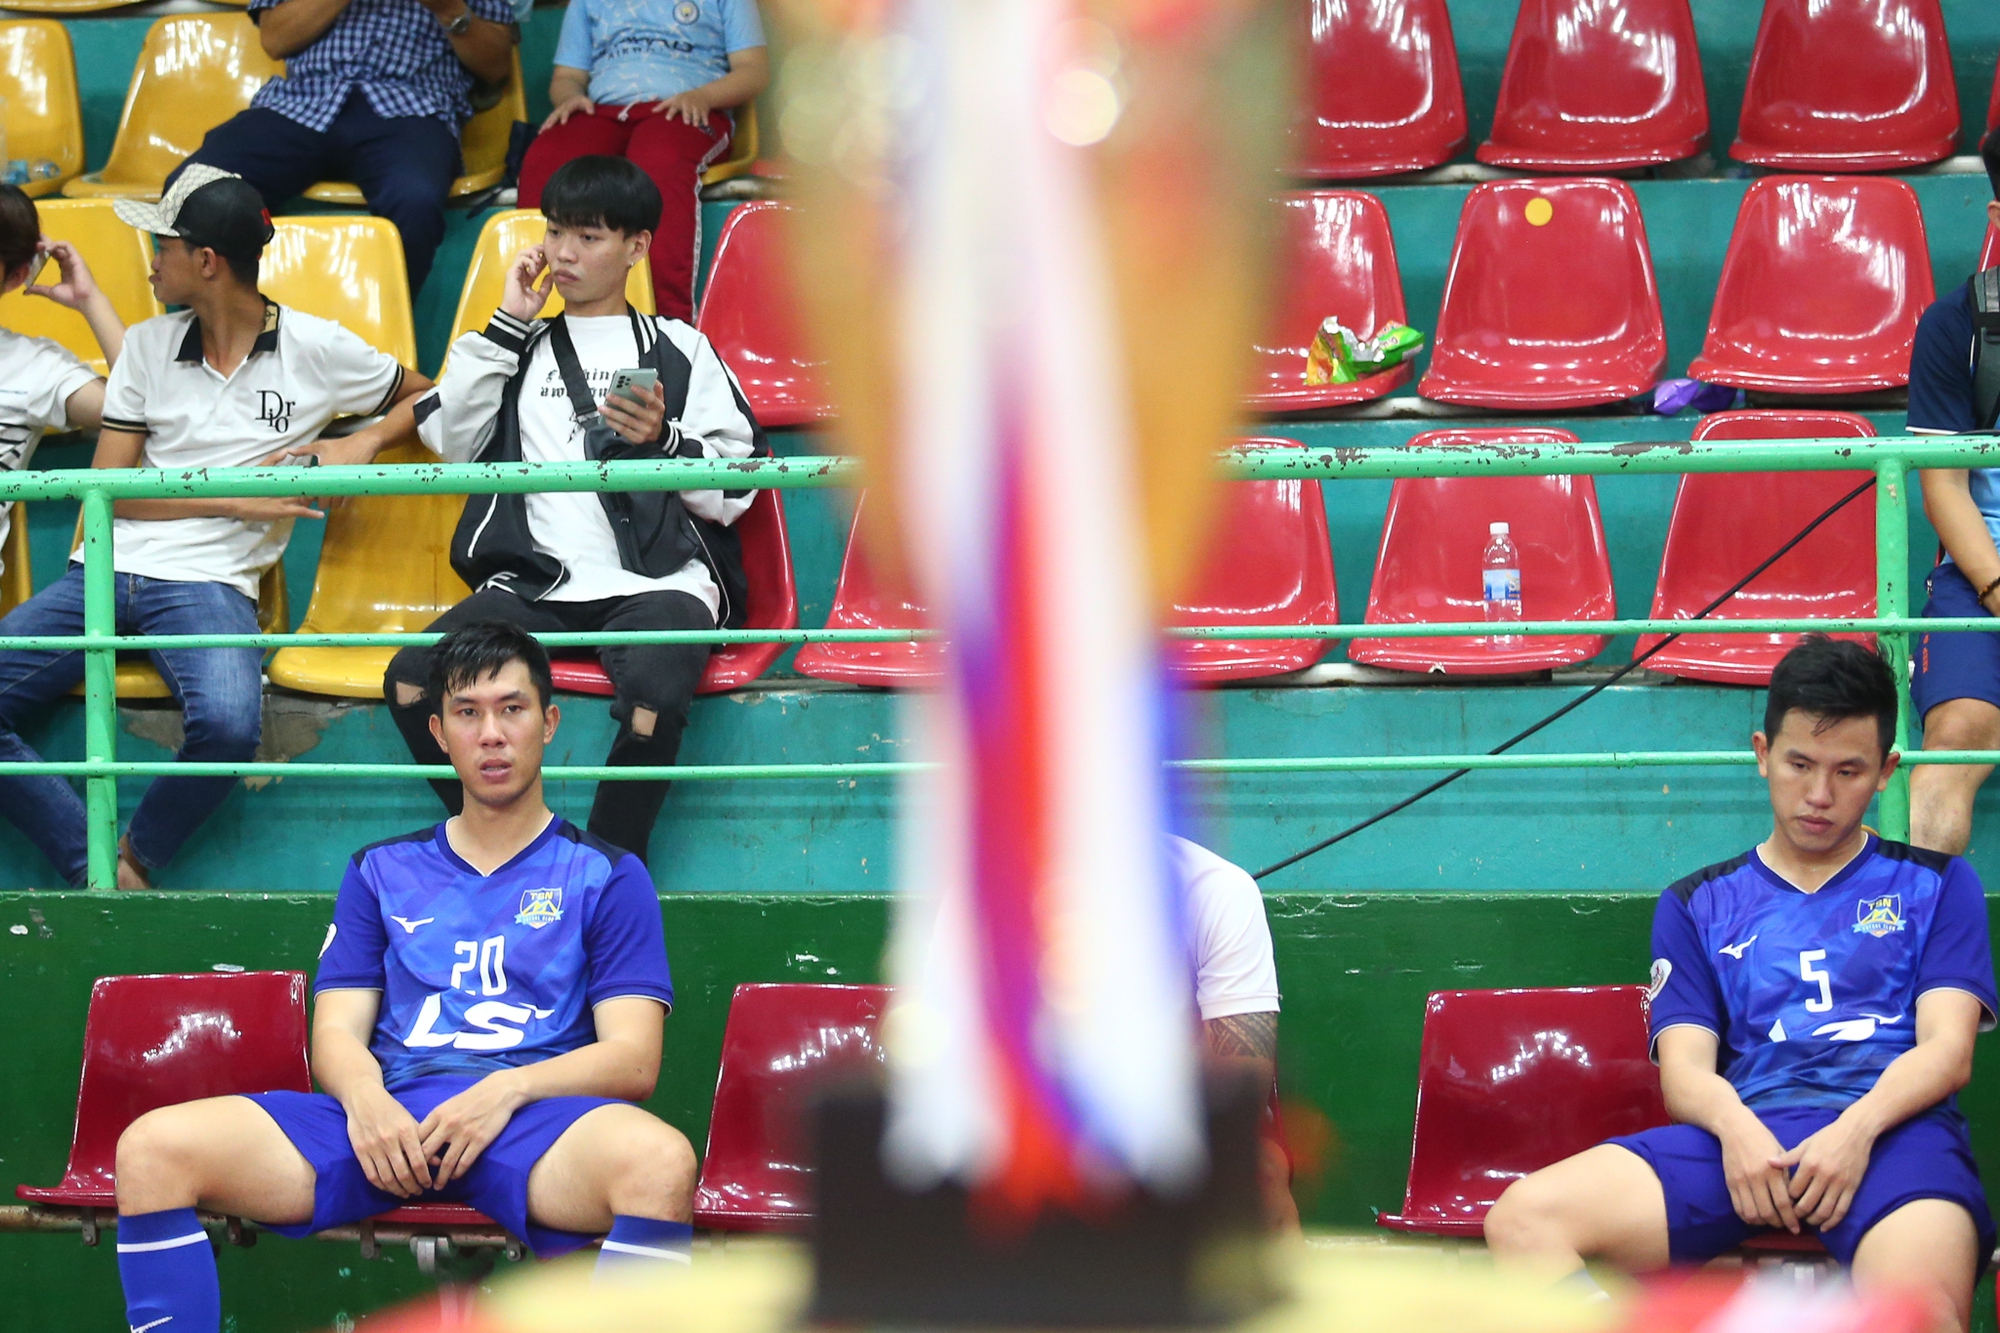 Hồ Văn Ý và cầu thủ futsal Thái Sơn Nam buồn bã khi về nhì ở Cúp Quốc gia - Ảnh 6.